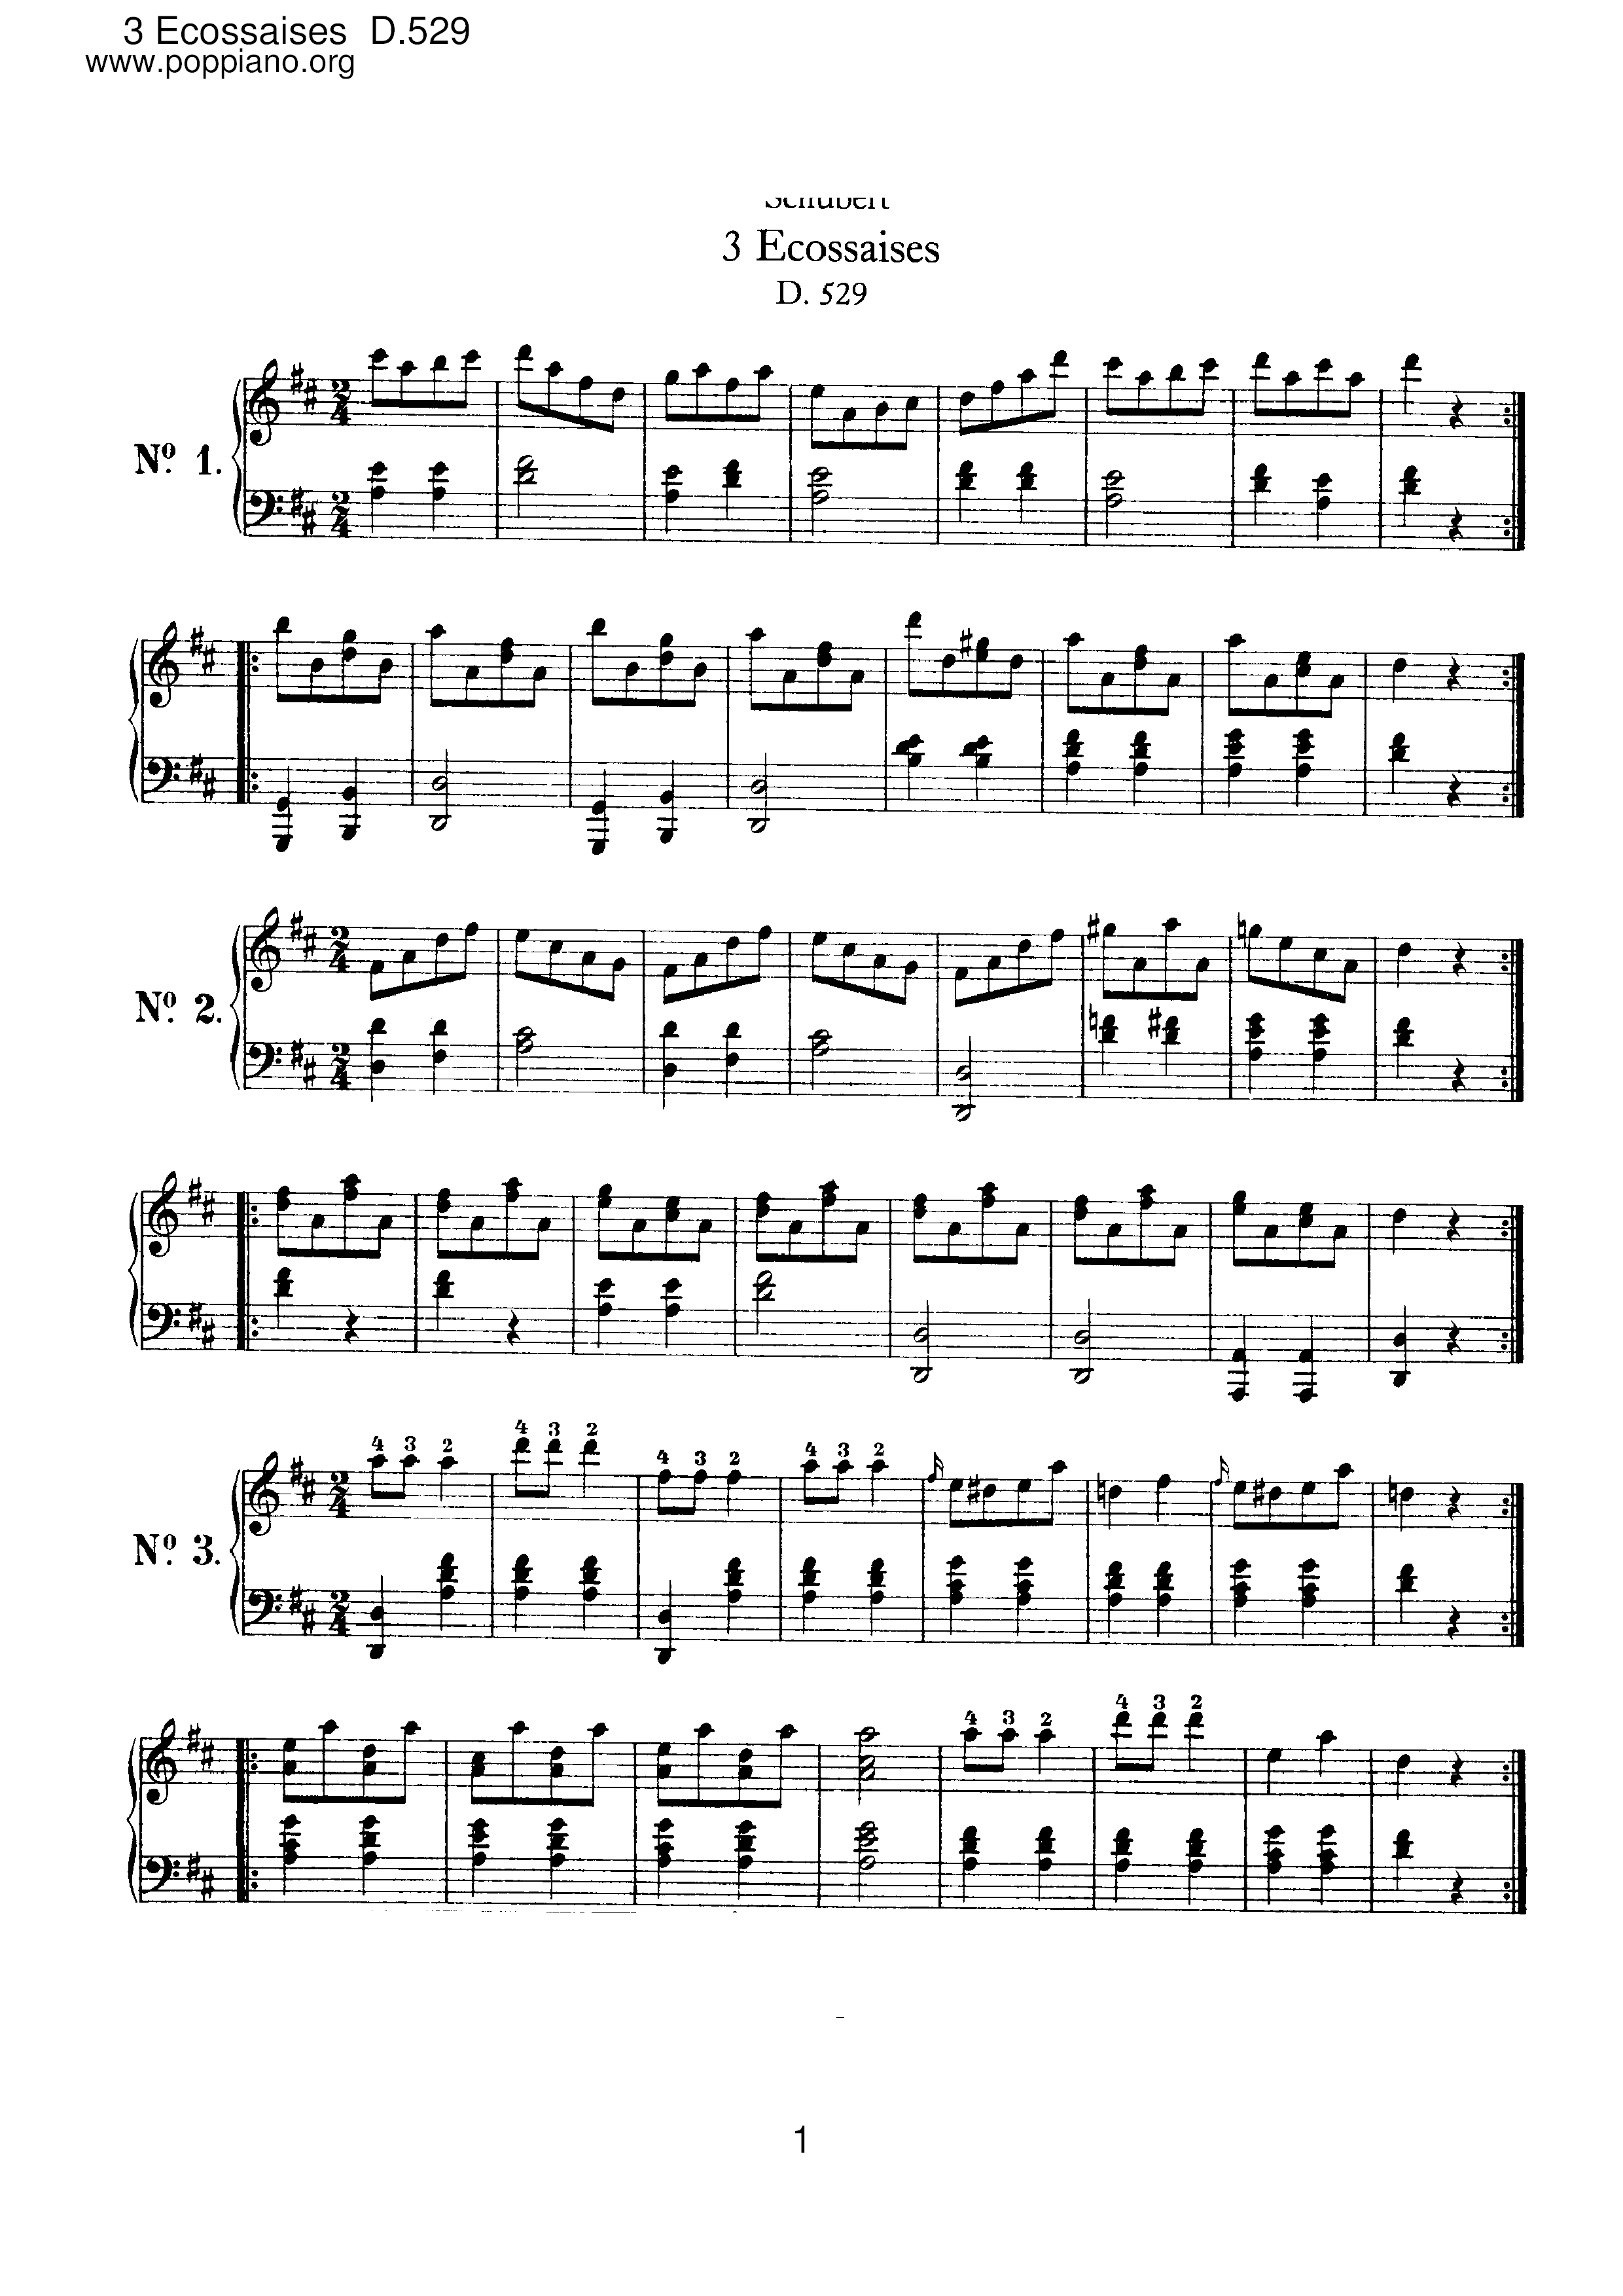 3 Ecossaises, D.529ピアノ譜